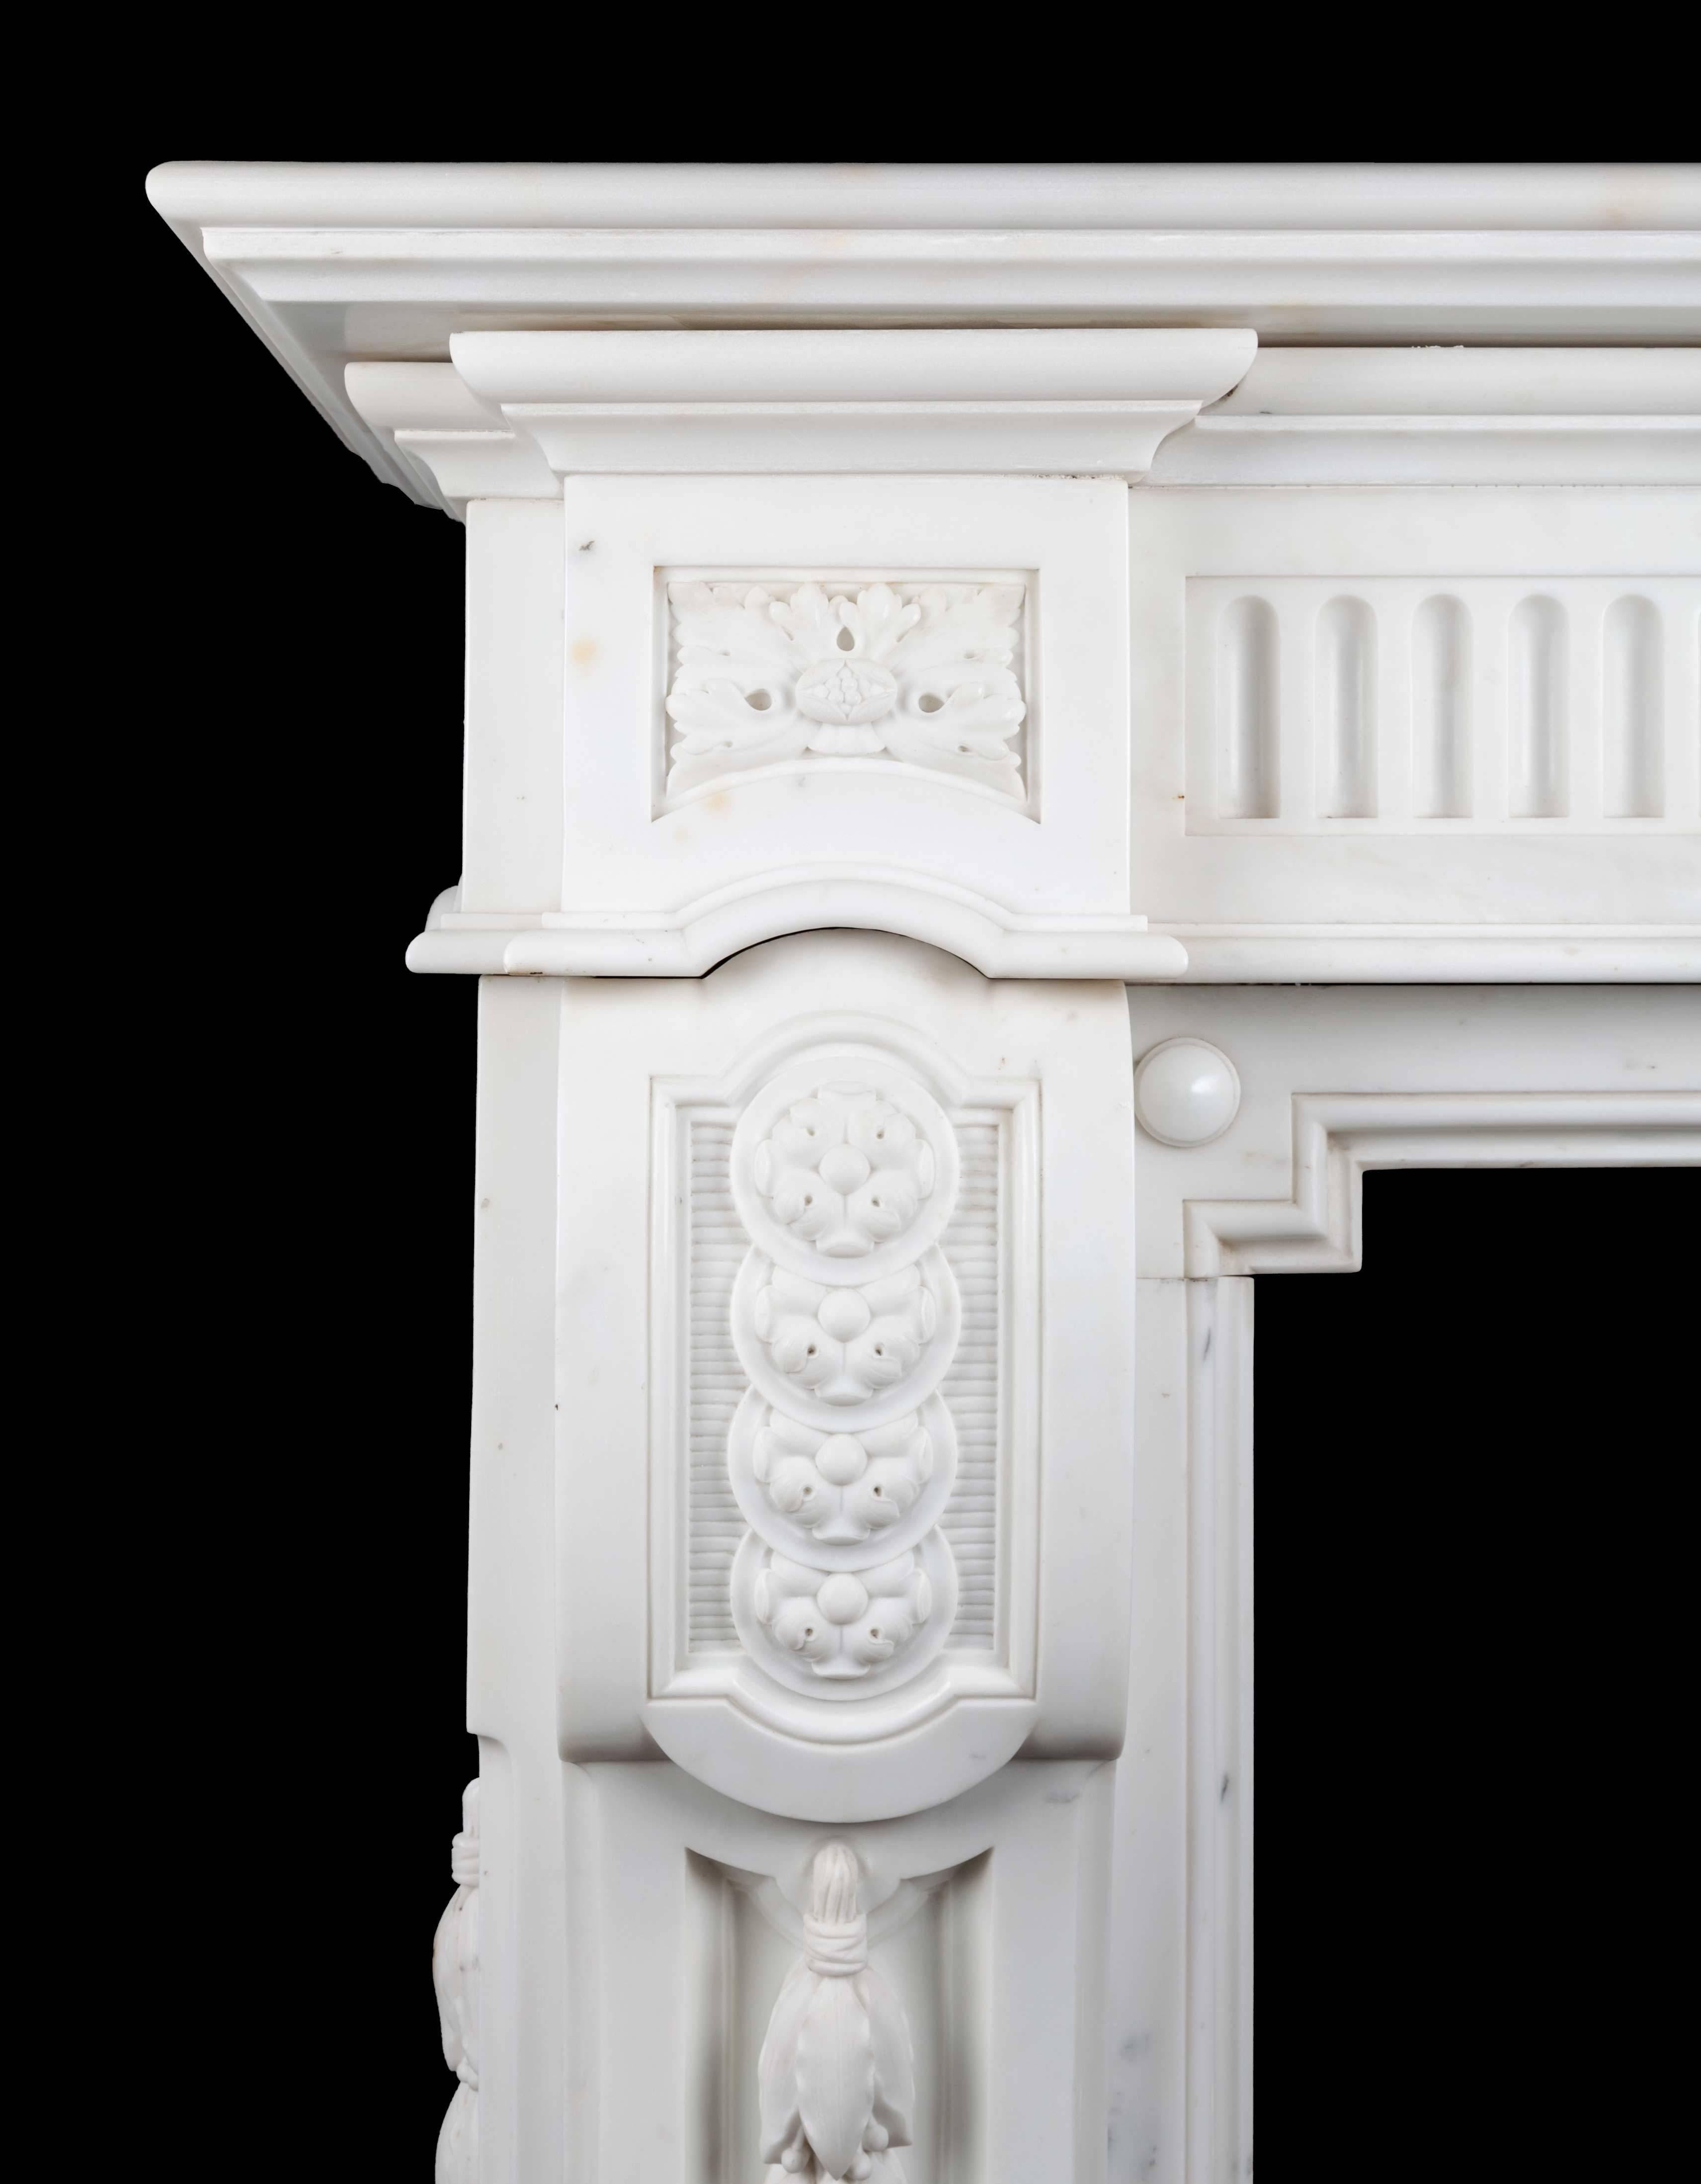 Cheminée ancienne statuaire française en marbre de Carrare de grande taille et de grande qualité. Cette magnifique cheminée de style Napoléon III est magnifiquement sculptée dans le plus pur des marbres blancs de statuaire.
La frise cannelée